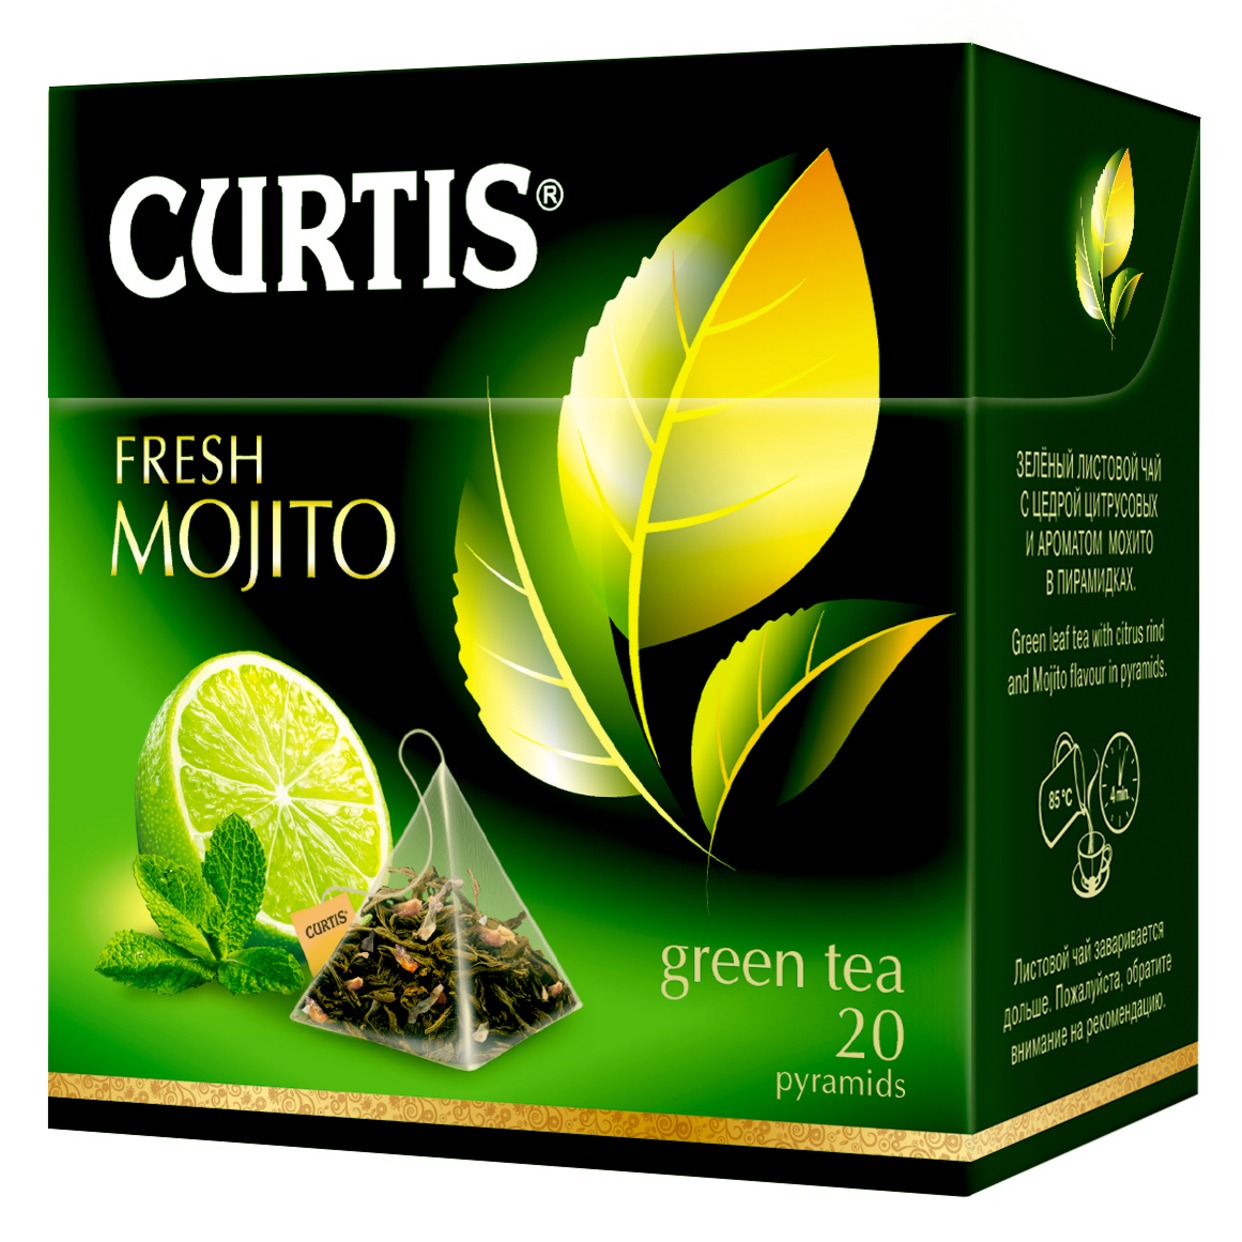 Чай Curtis Fresh Mojito зеленый 20пак*1,7г по акции в Пятерочке